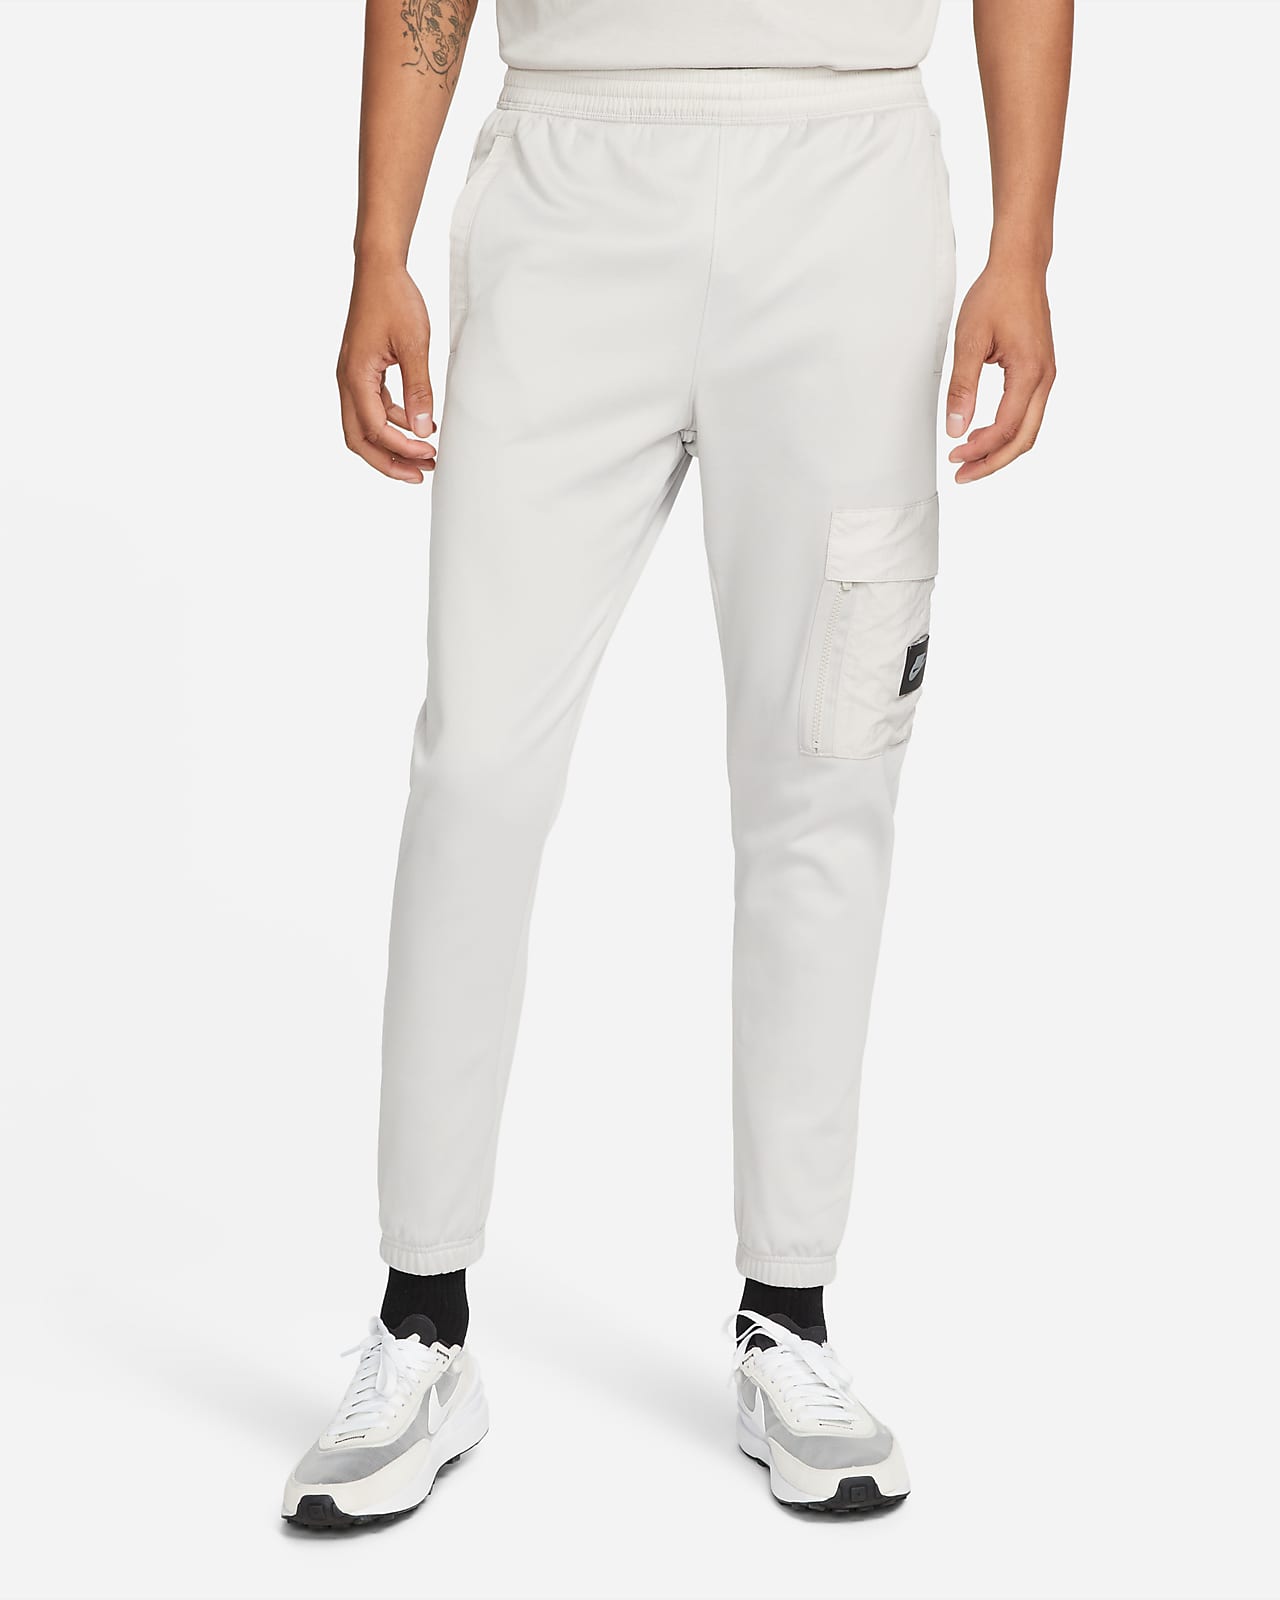 Nike Sportswear Dri-FIT Men's Fleece Joggers